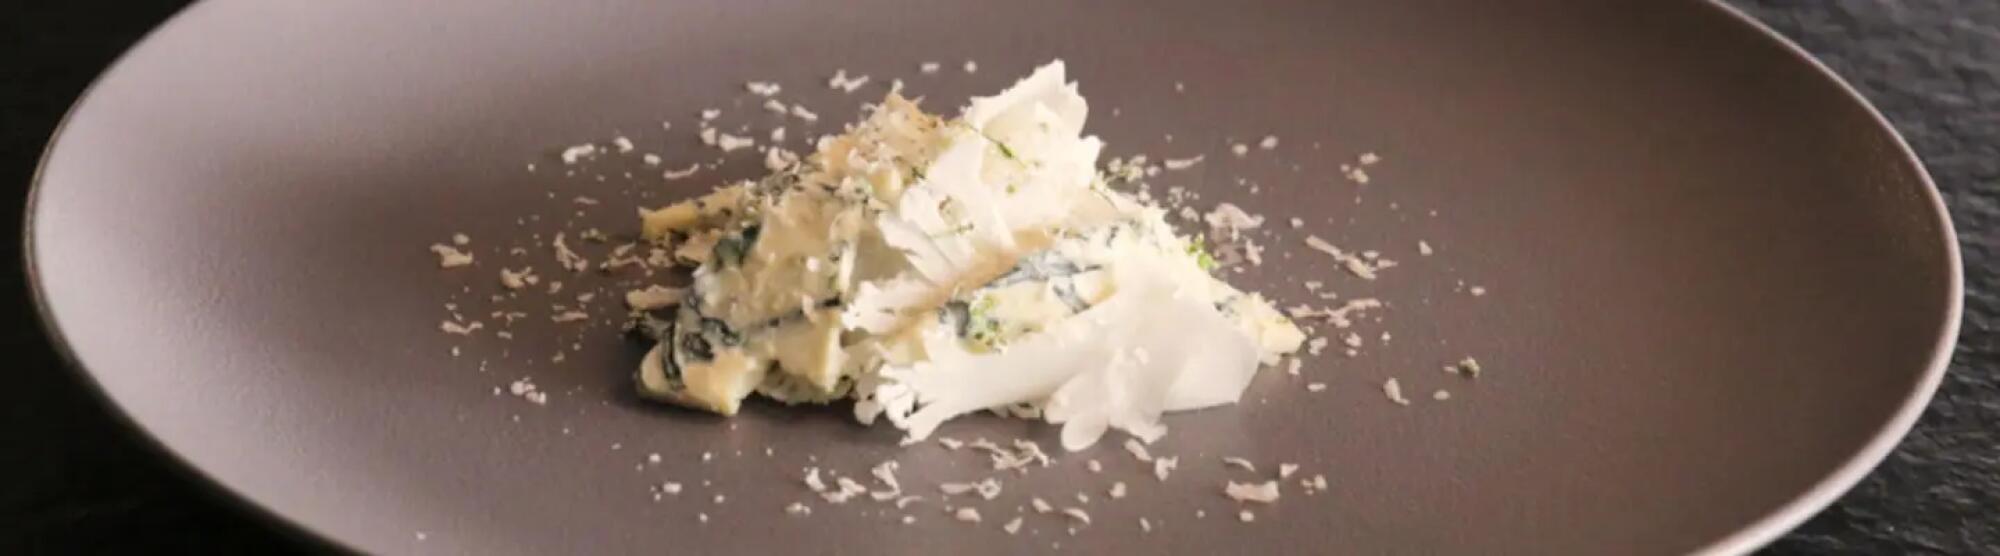 Recette : Crème de chou-fleur au fromage bleu